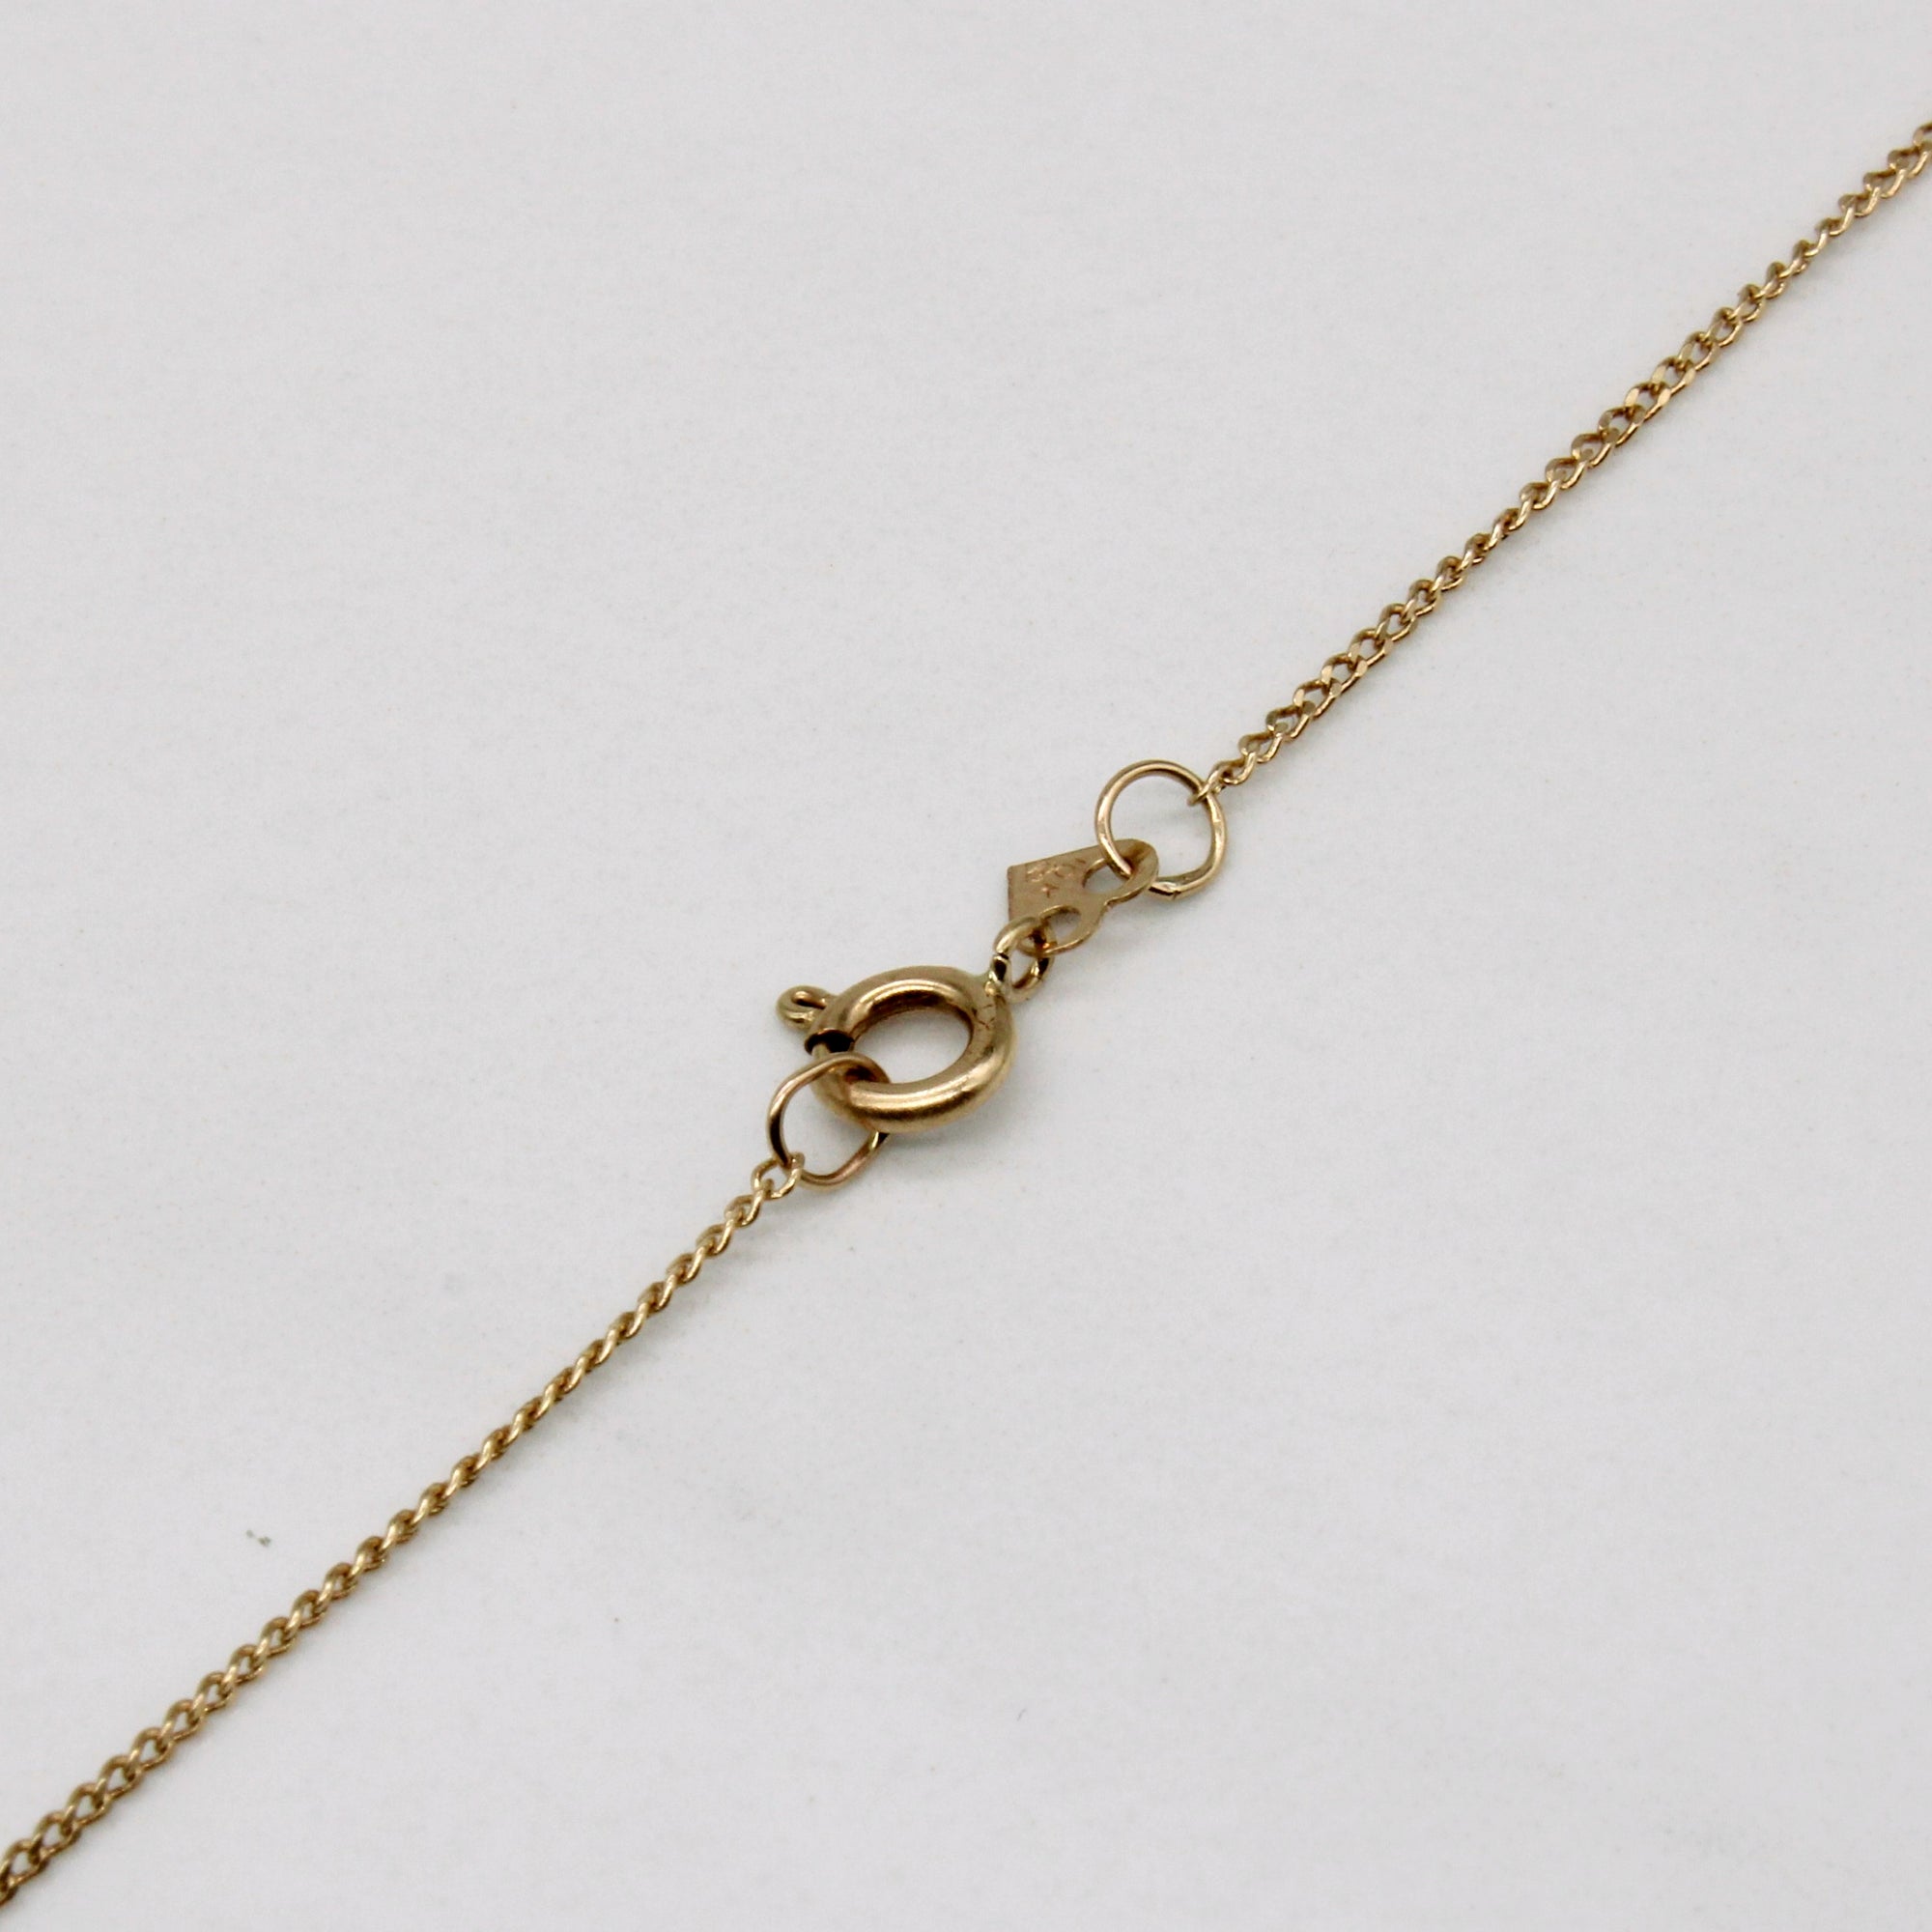 Aquamarine Pendant & Necklace | 1.50ct | 16